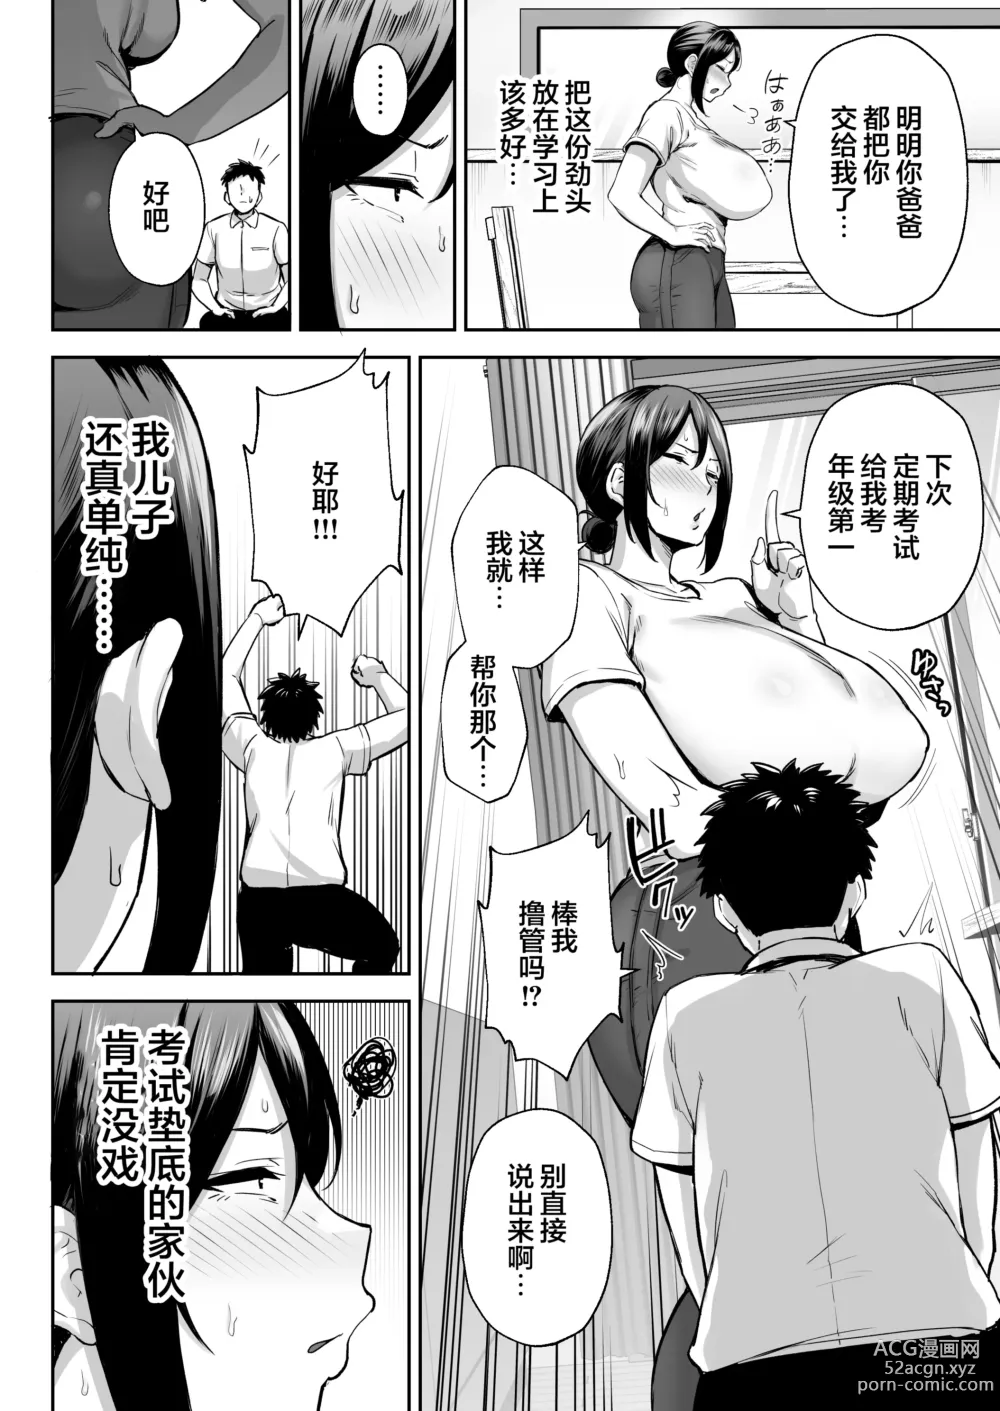 Page 8 of manga [Golden Bazooka (Gagarin Yoshi) Ichiban Mimoto de Eroi Mesuki ~ Haha Dakedo, Shiko Saru Musuko ni Komatteimasu]